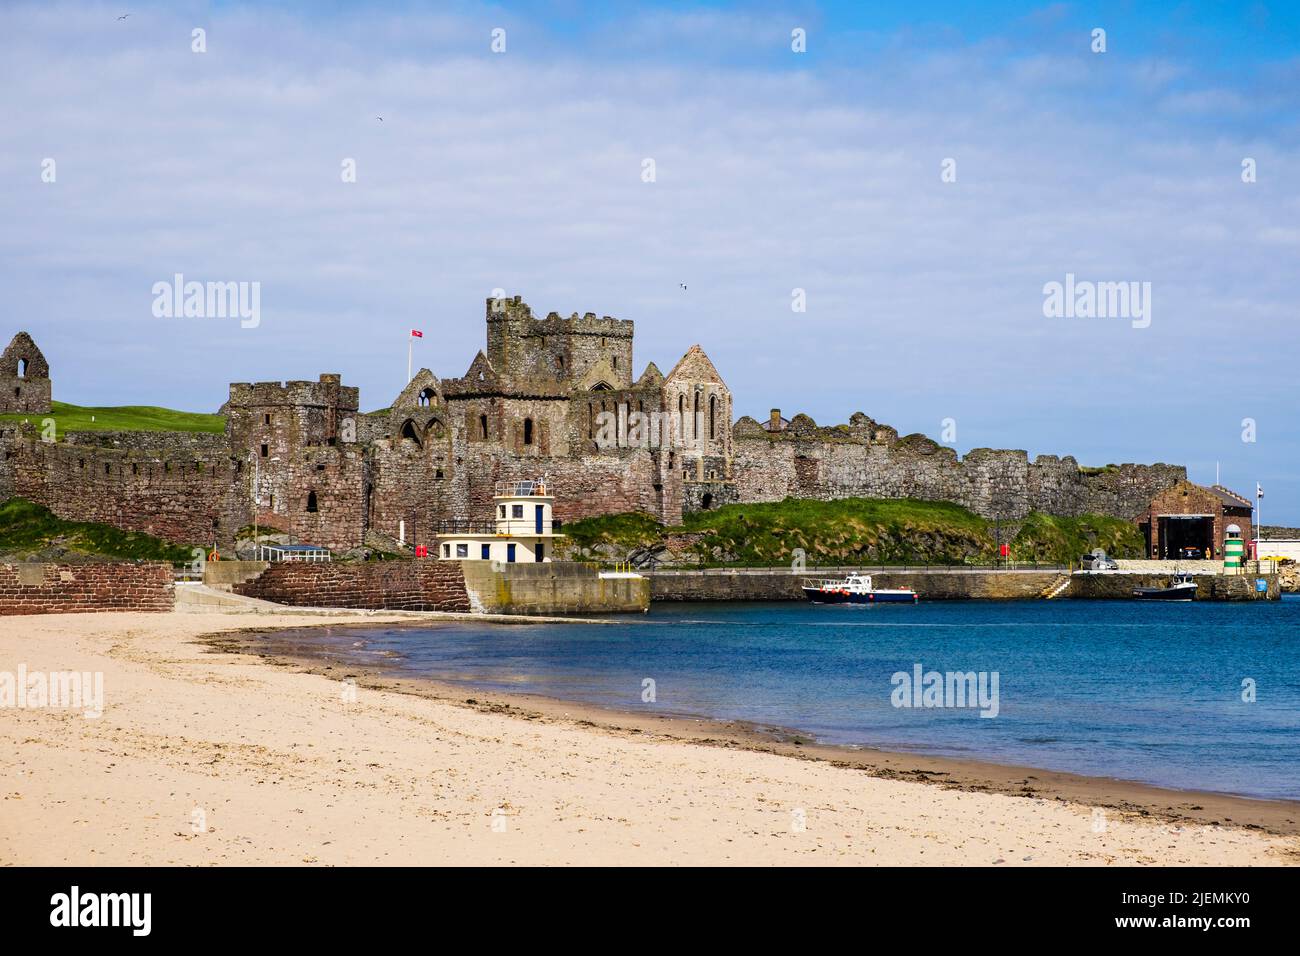 Sbuccia le rovine del castello e la spiaggia di sabbia nella baia. Peel, Isola di Man, Isole britanniche, Europa Foto Stock